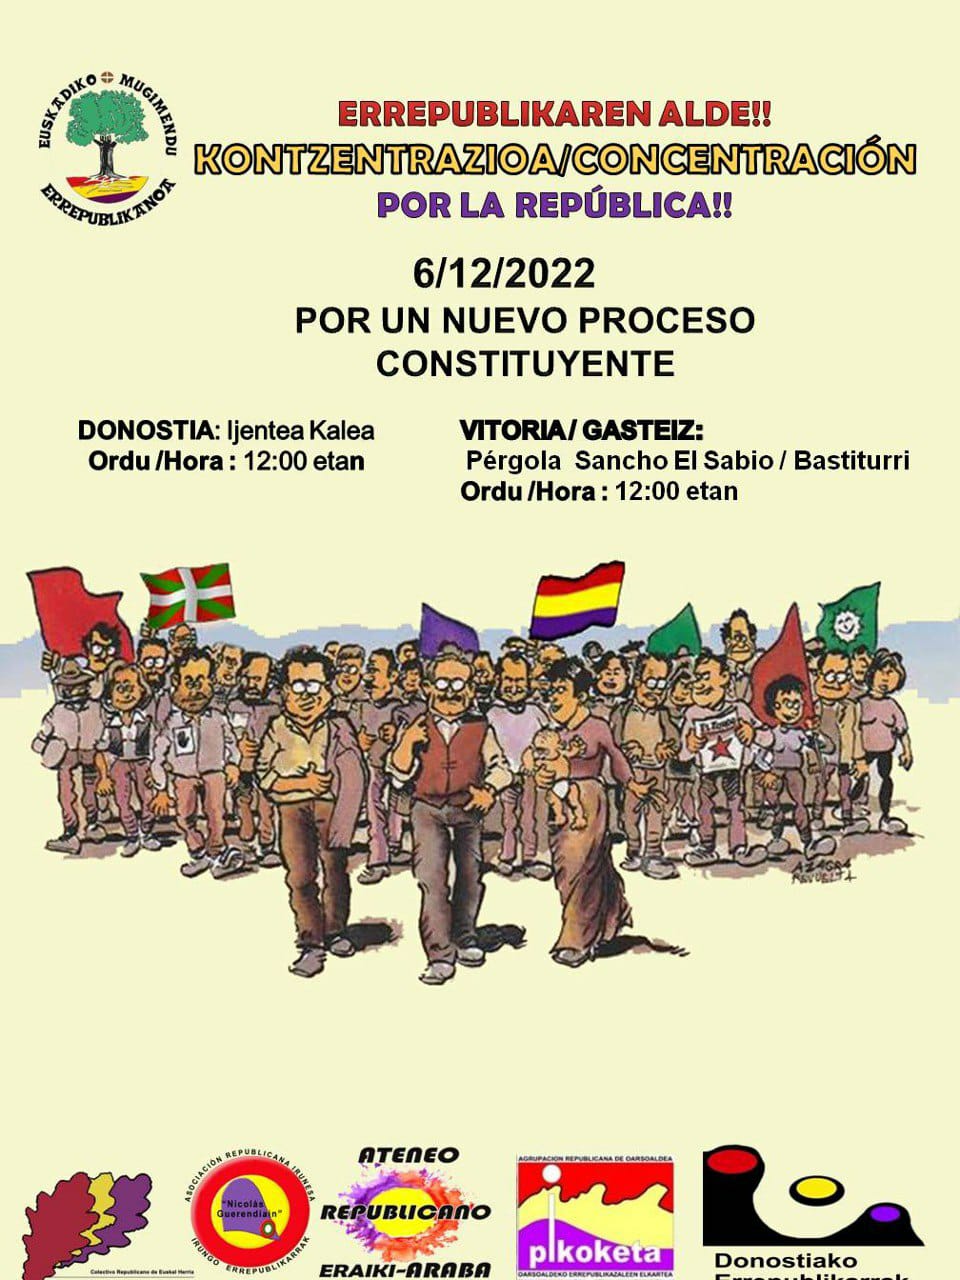 El PCE-EPK considera agotada la Constitución y llama a participar en las movilizaciones Republicanas convocadas para el 6 de Diciembre en Donostia y Gasteiz.